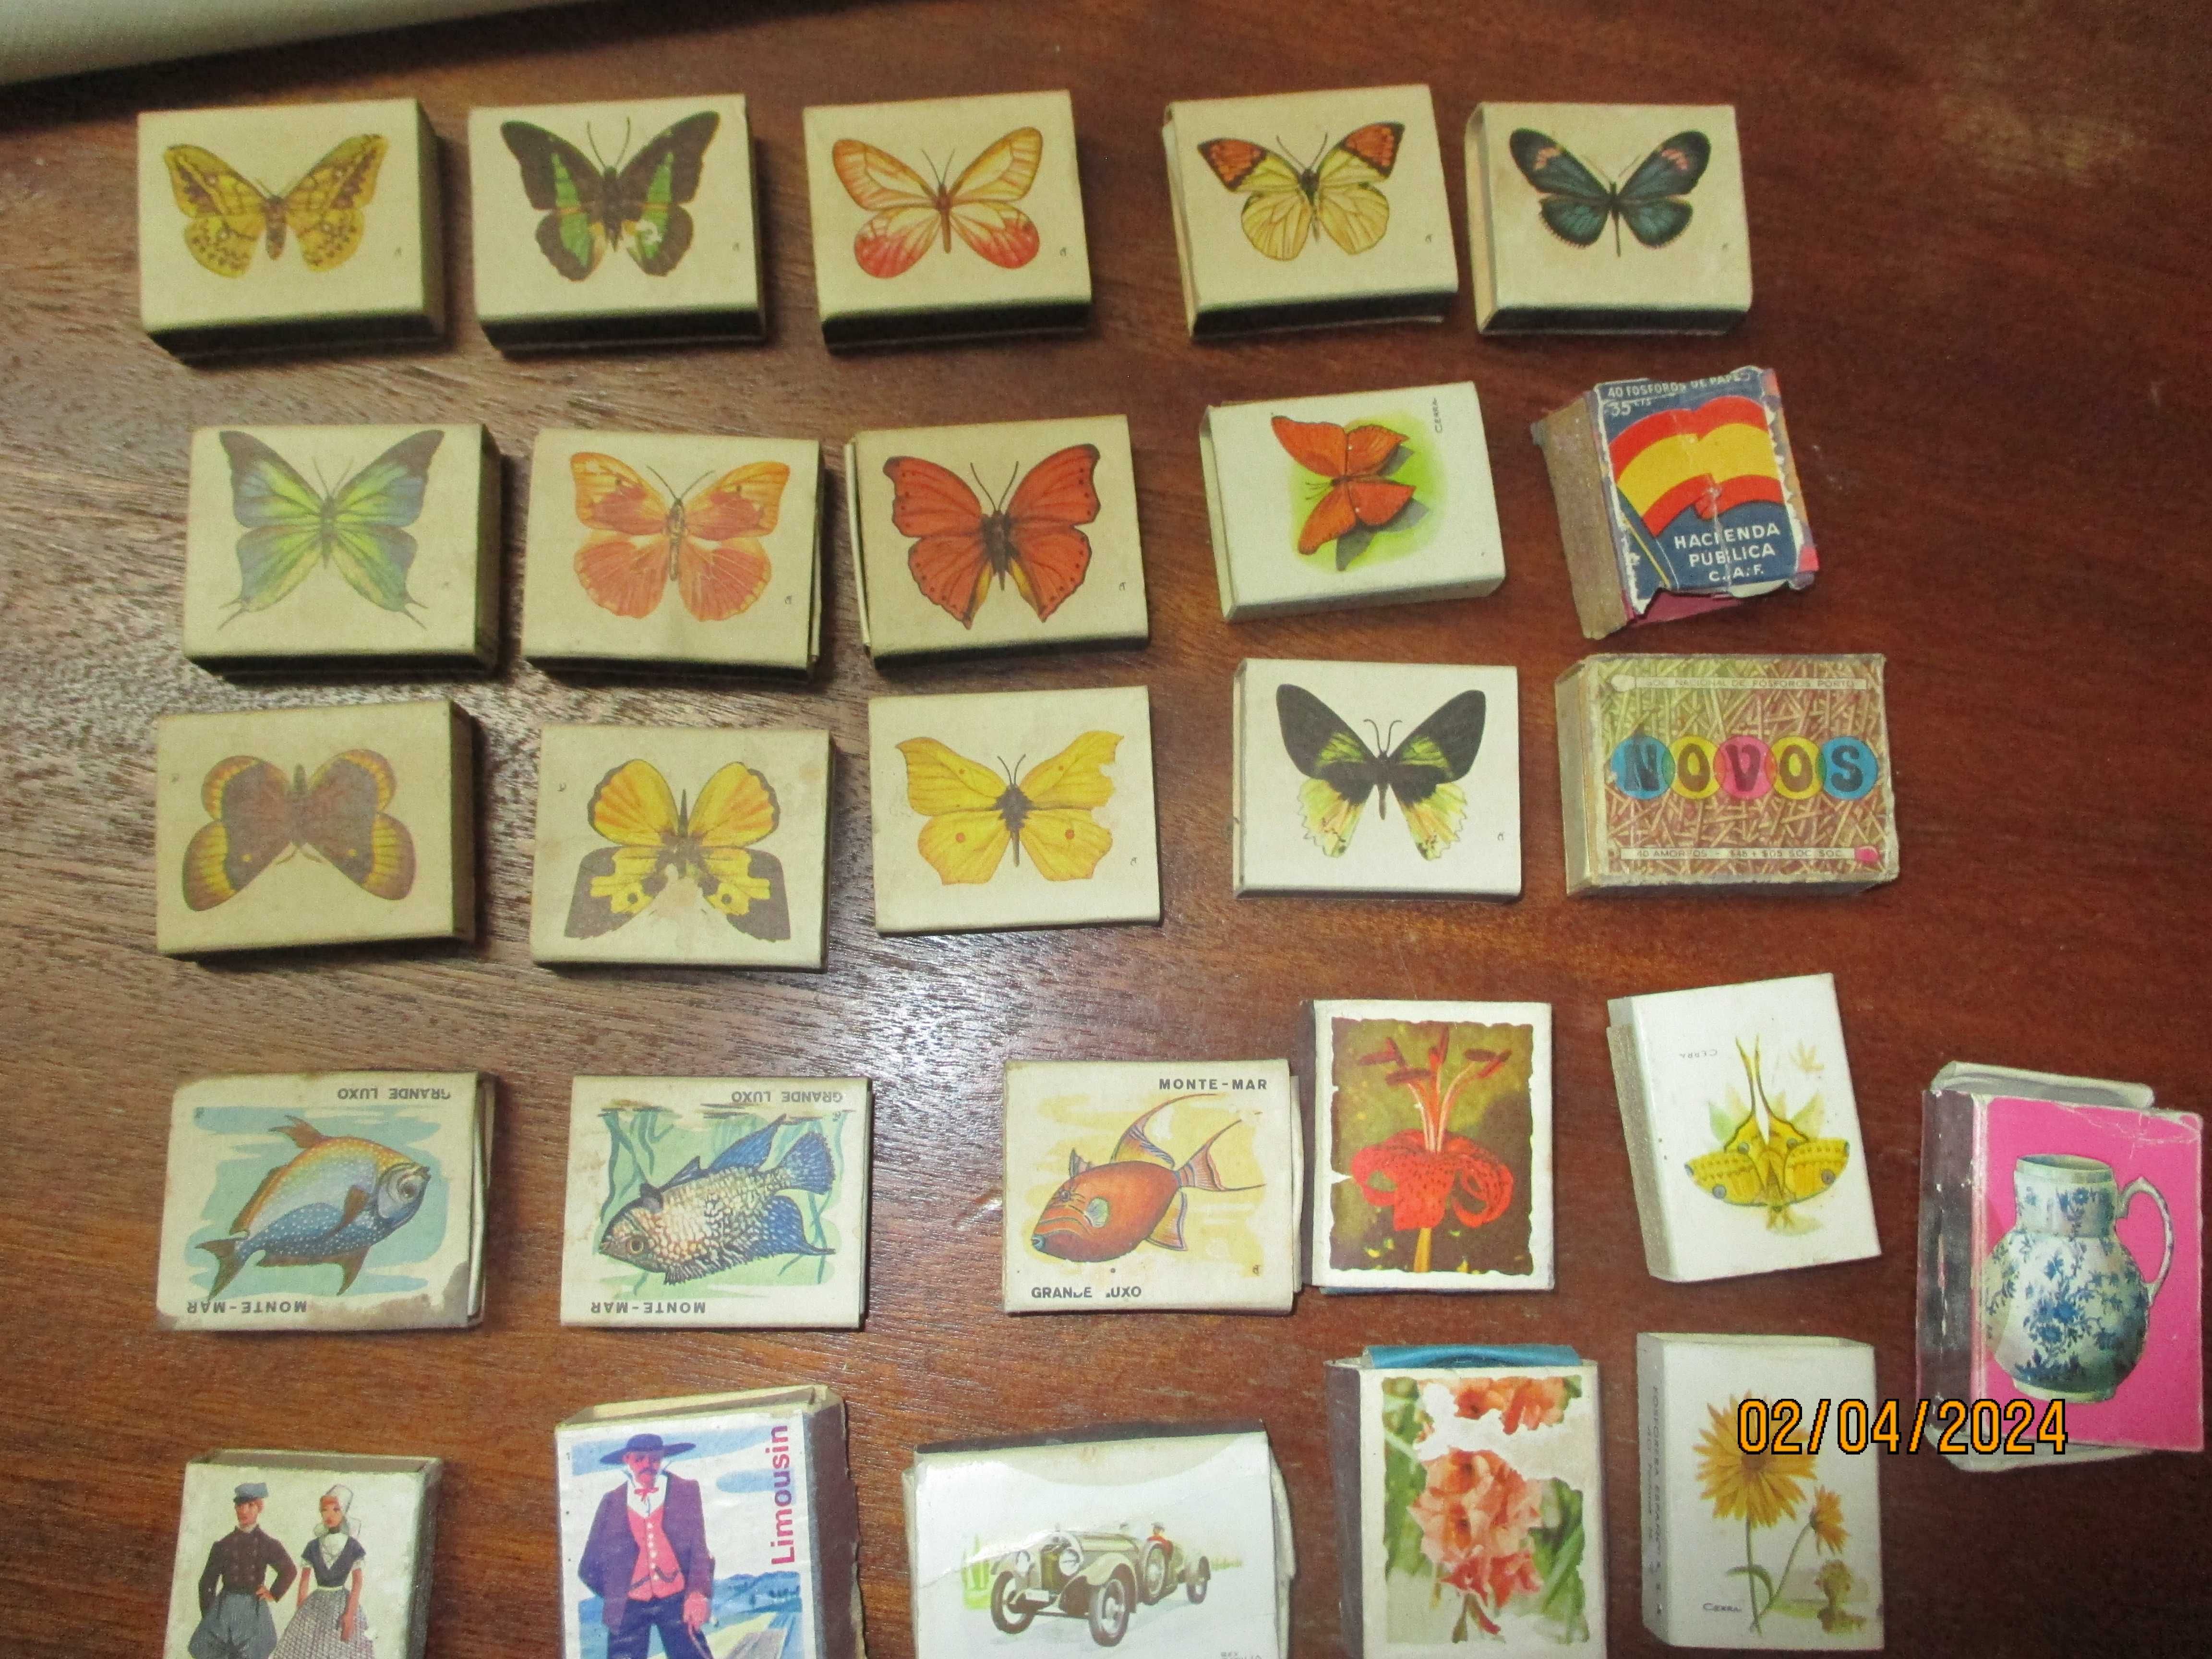 40 caixas e carteiras de fósforos antigas para colecão